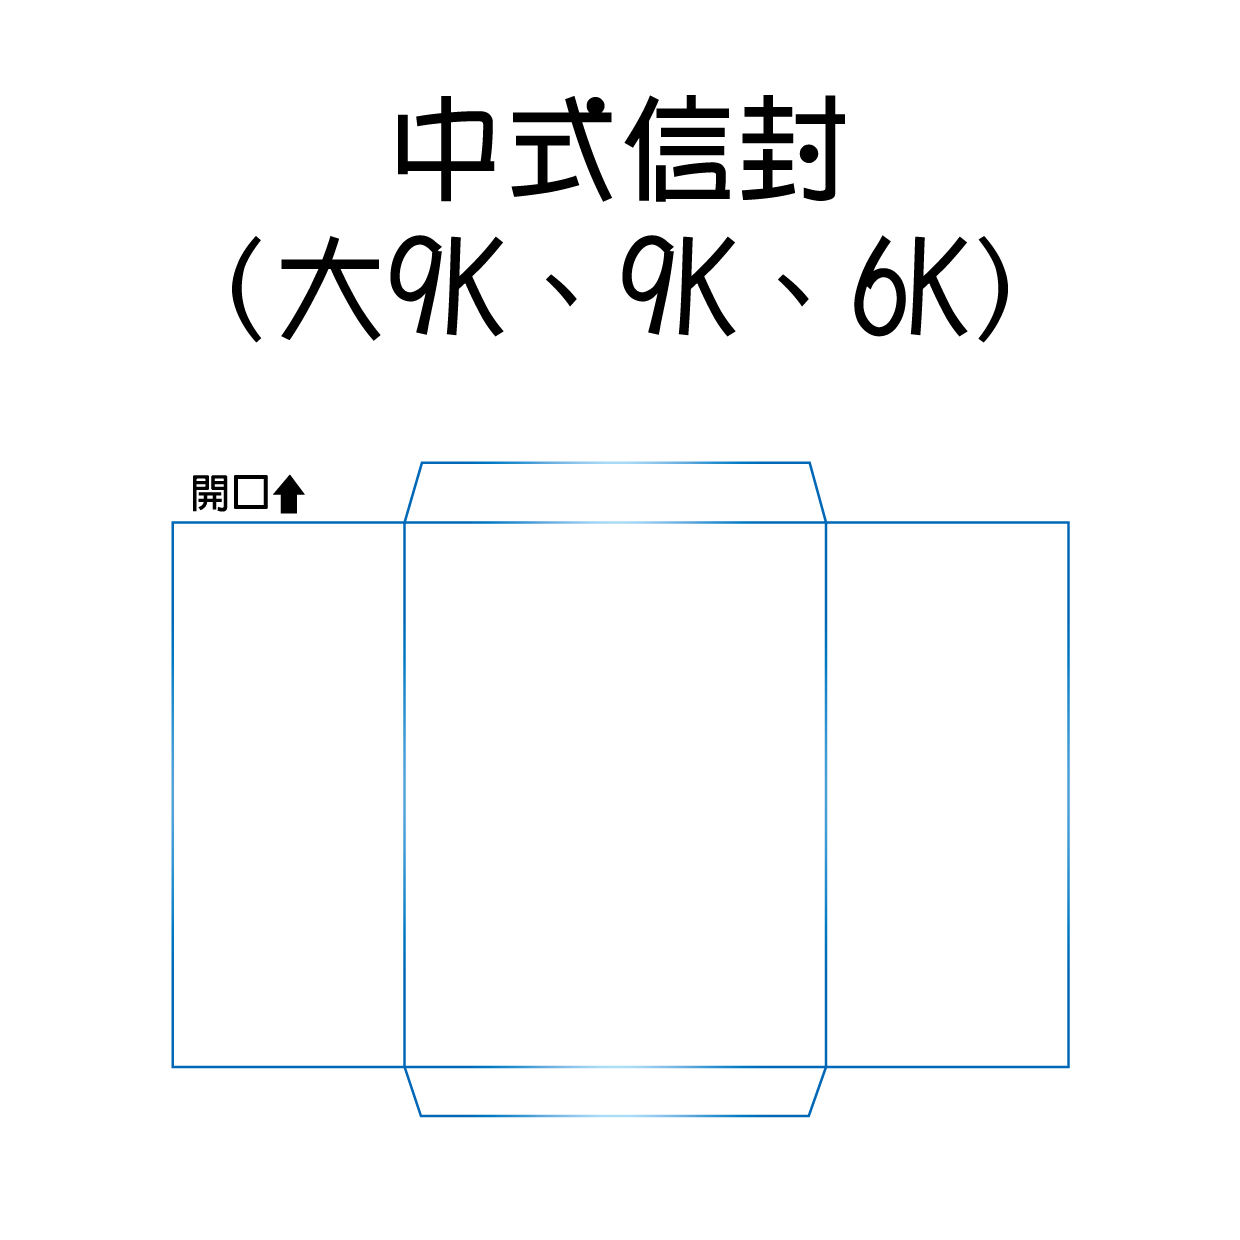 中式信封(大9K、9K、6K)